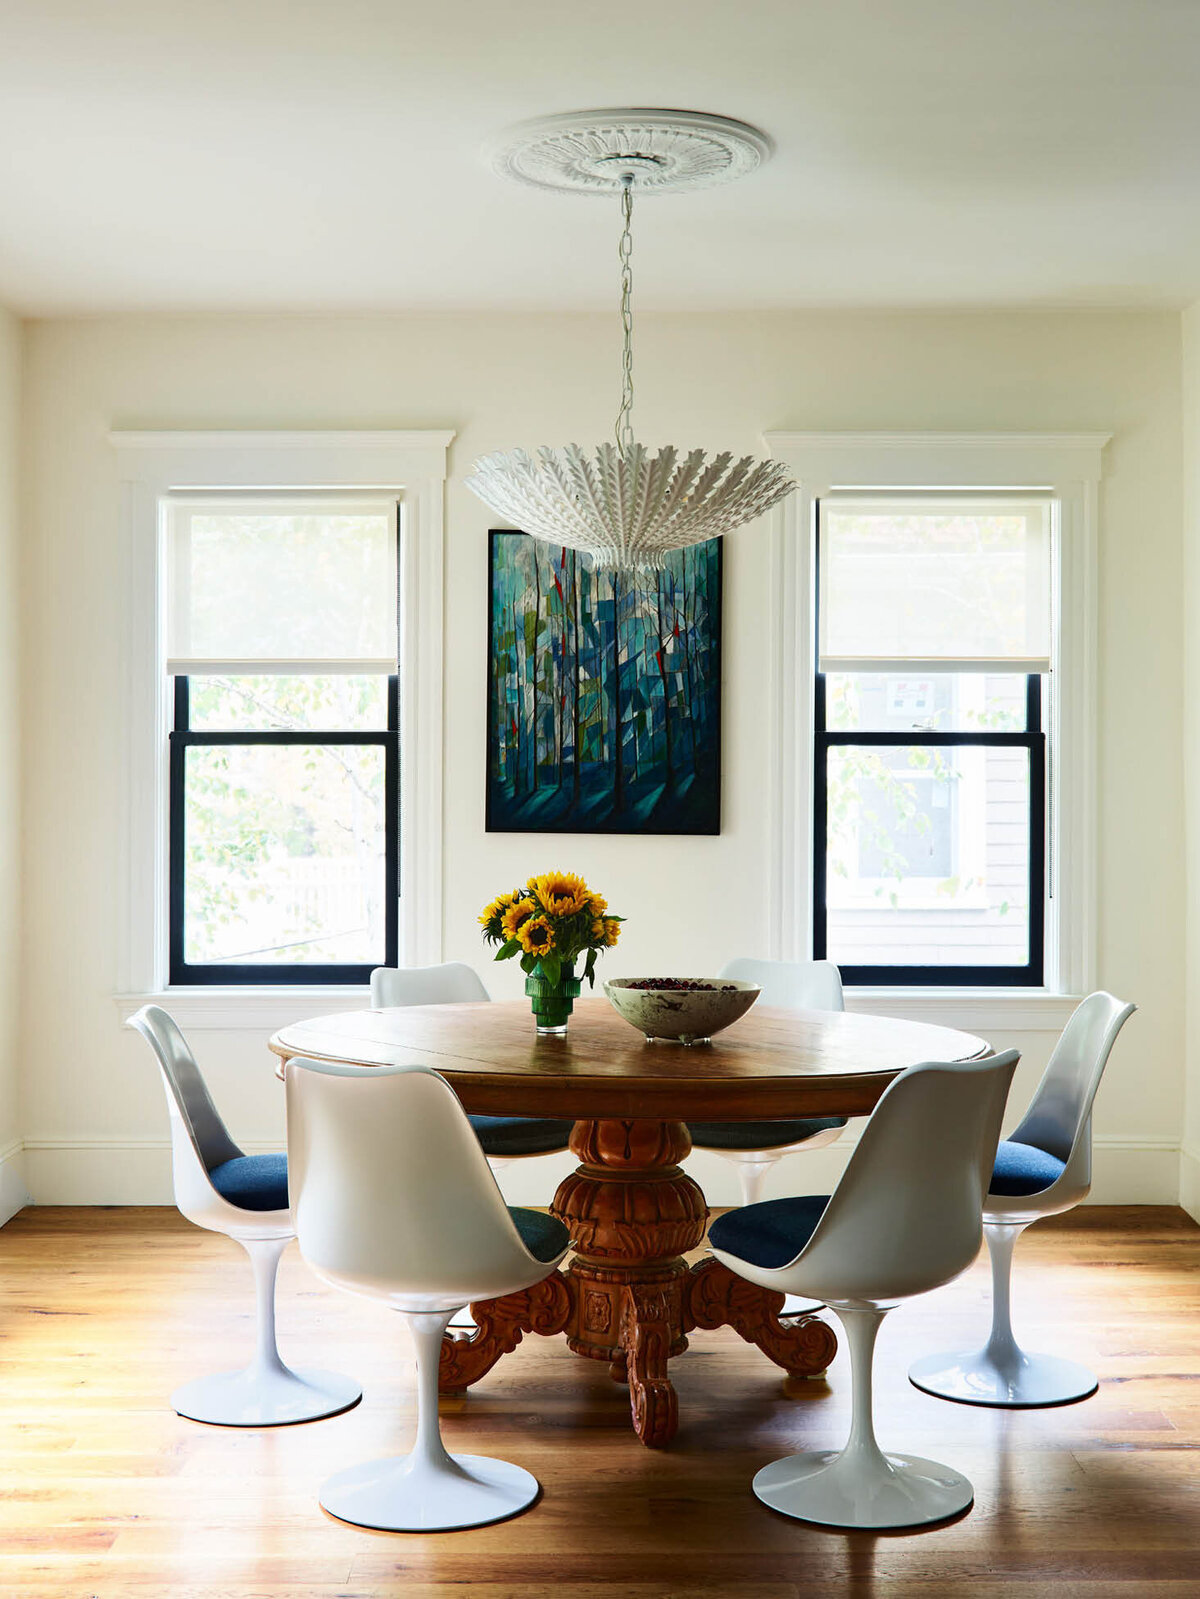 Sarah_Scales_Interior_Design_Full_Home_Boston_Brookline_Decorate_10